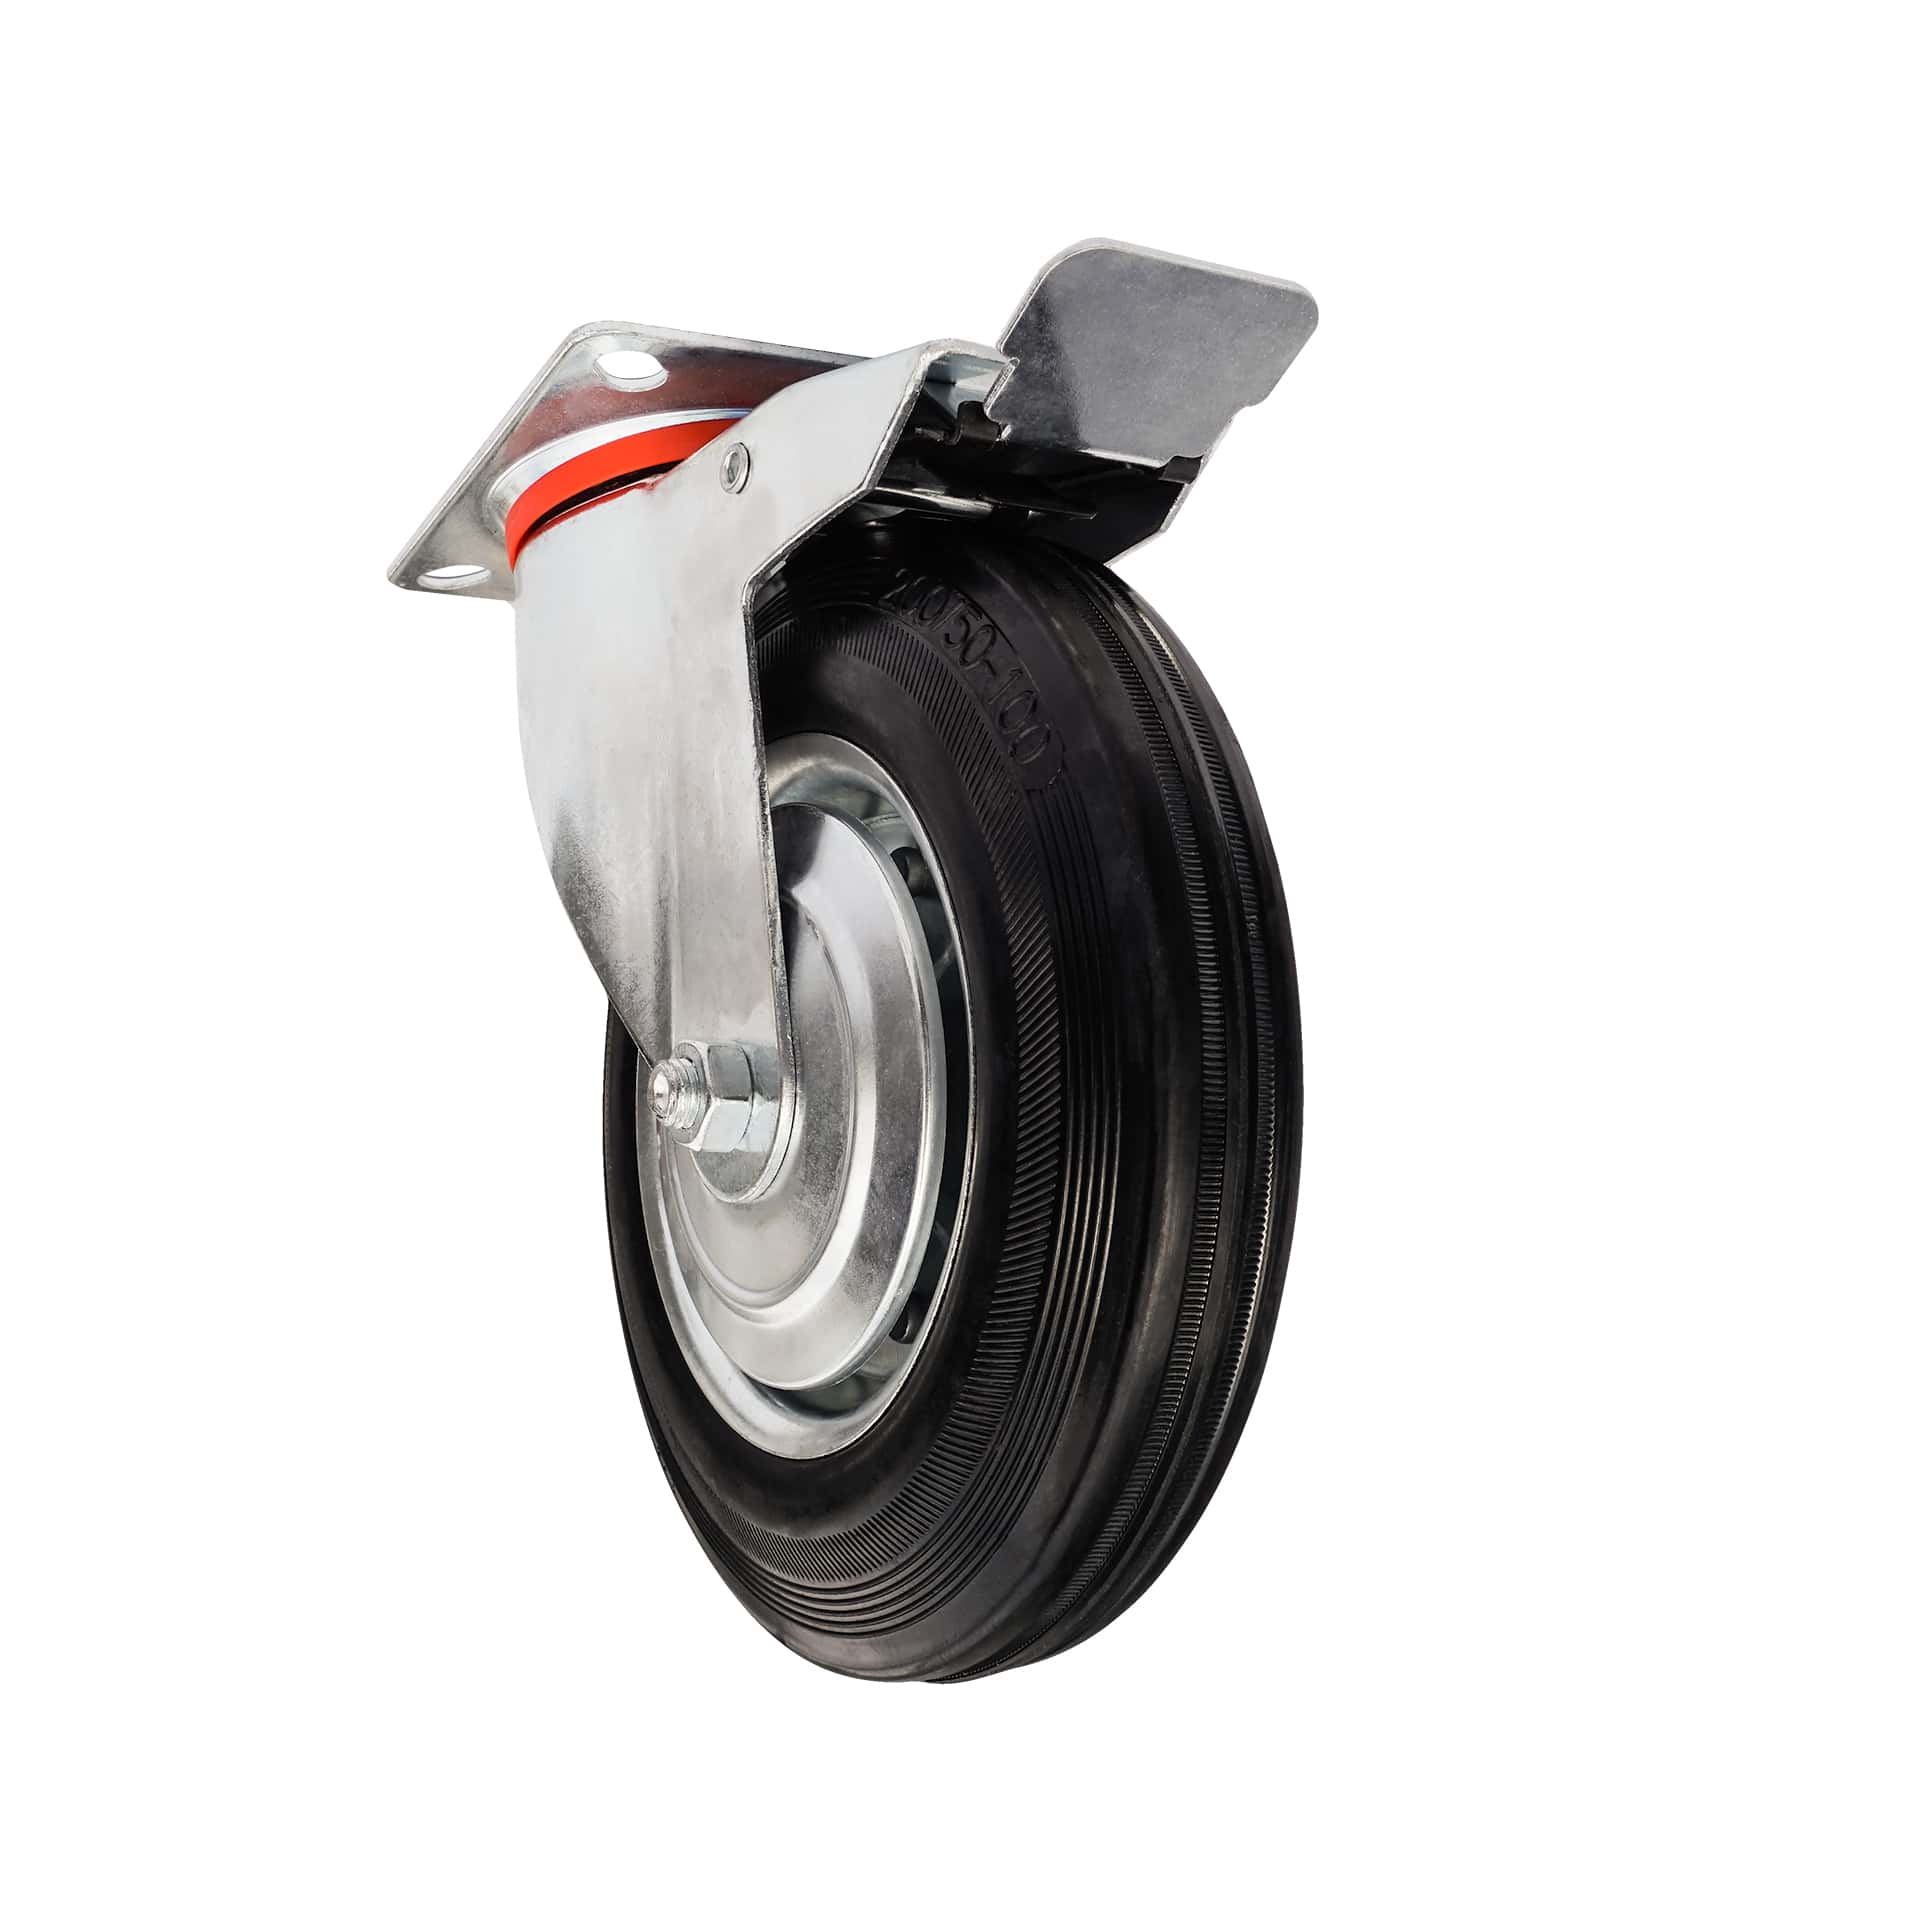 Ø 100 mm | Zestaw kołowy obrotowy z hamulcem: metal guma, płyta mocująca, łożysko wałeczkowe, nośność 50 kg | 4003-100 - płóprofil